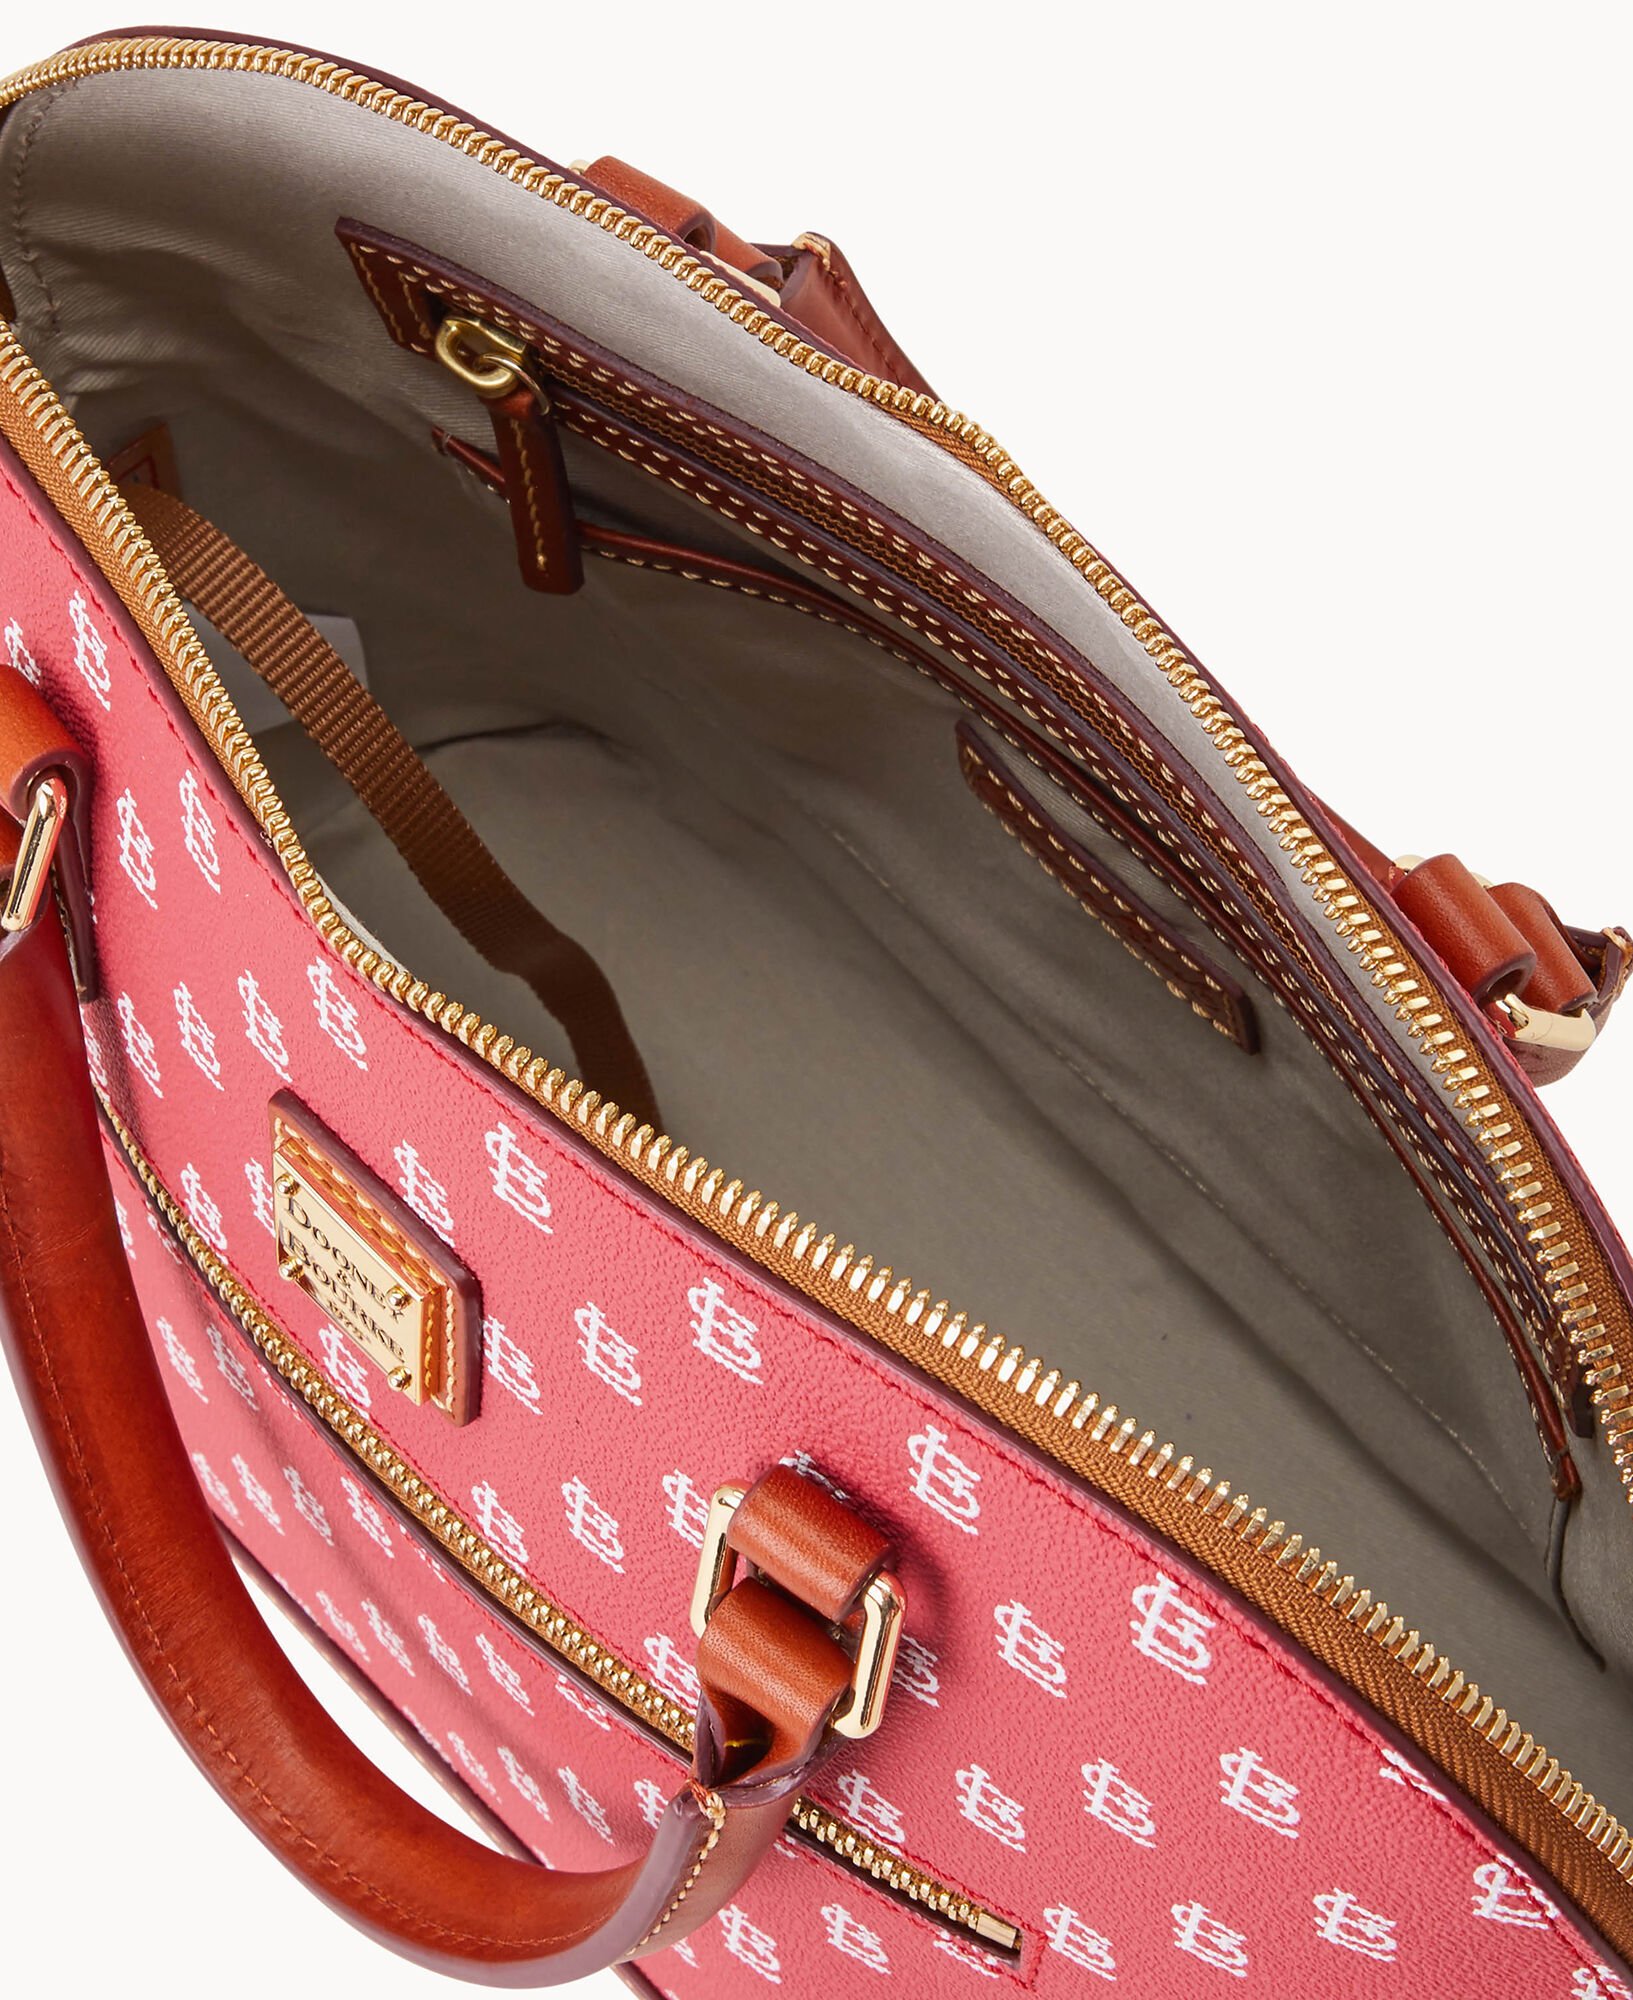 Dooney & Bourke St. Louis Cardinals Top Zip Crossbody Shoulder Bag